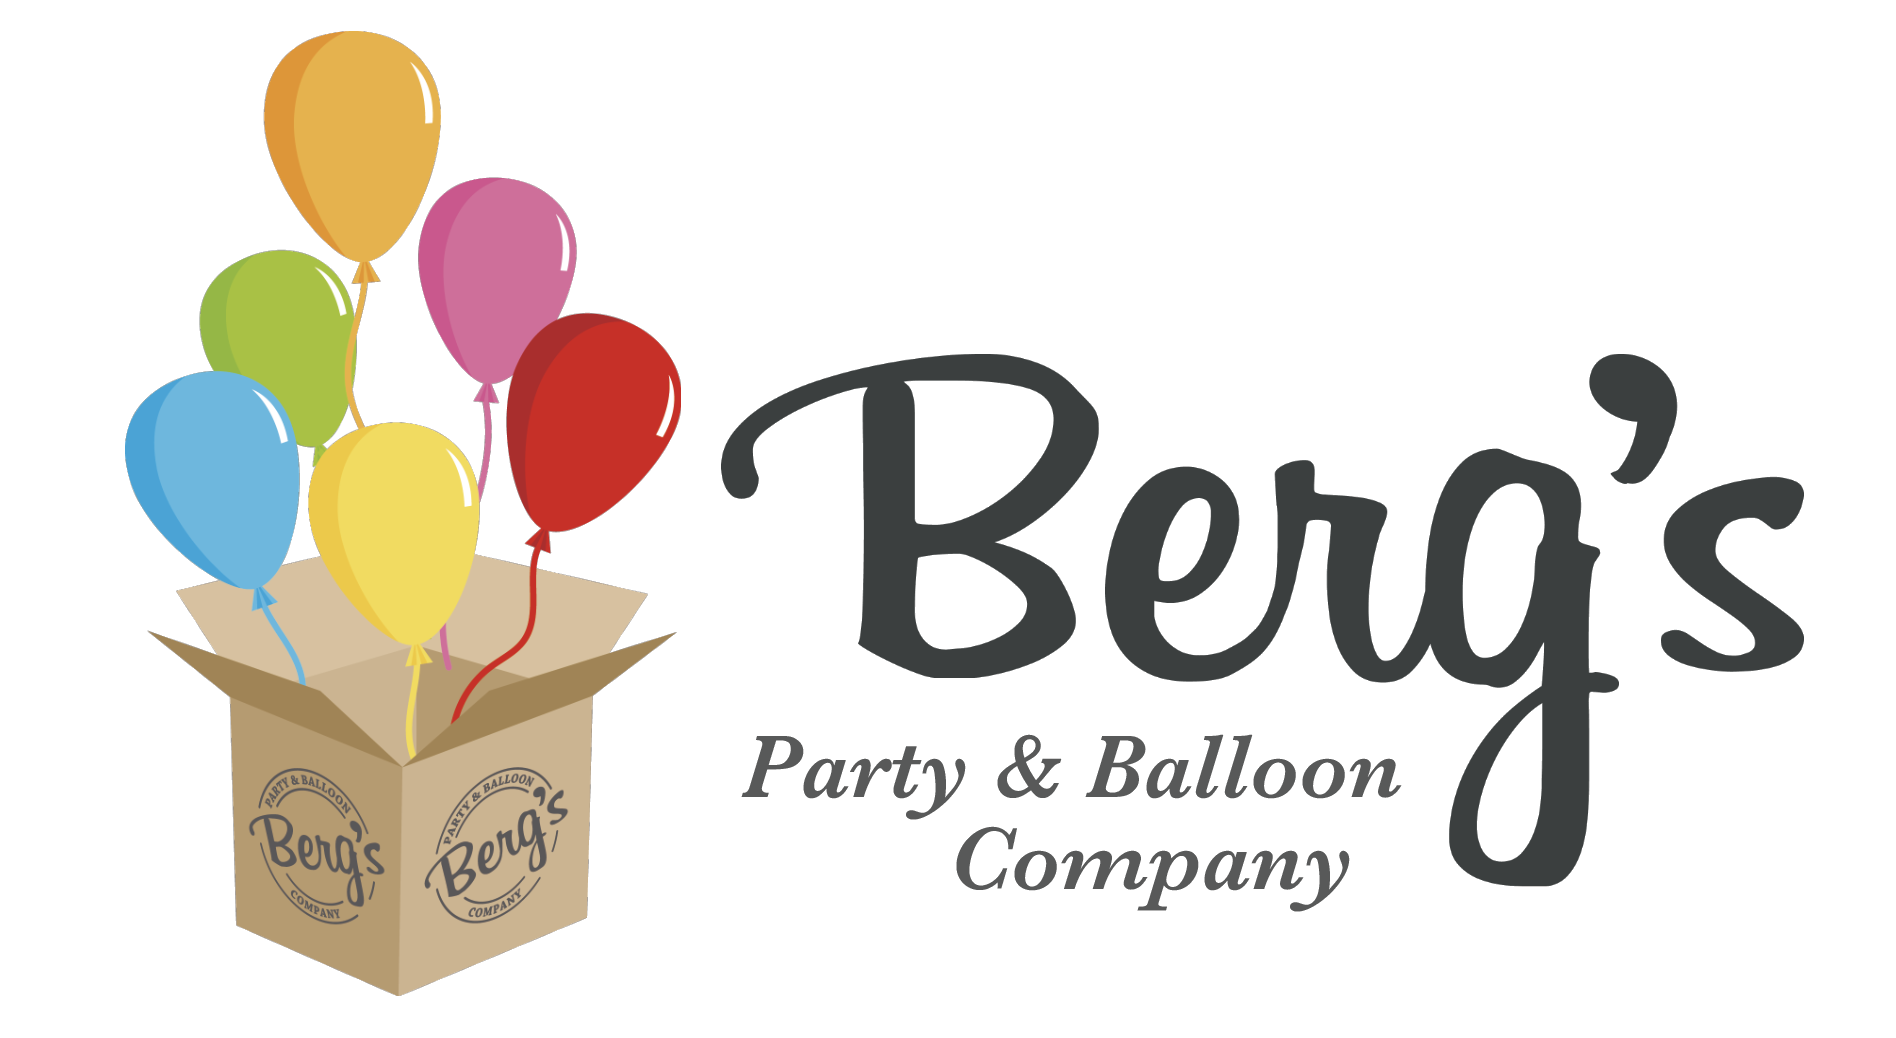 Berg's Party & Balloon Company